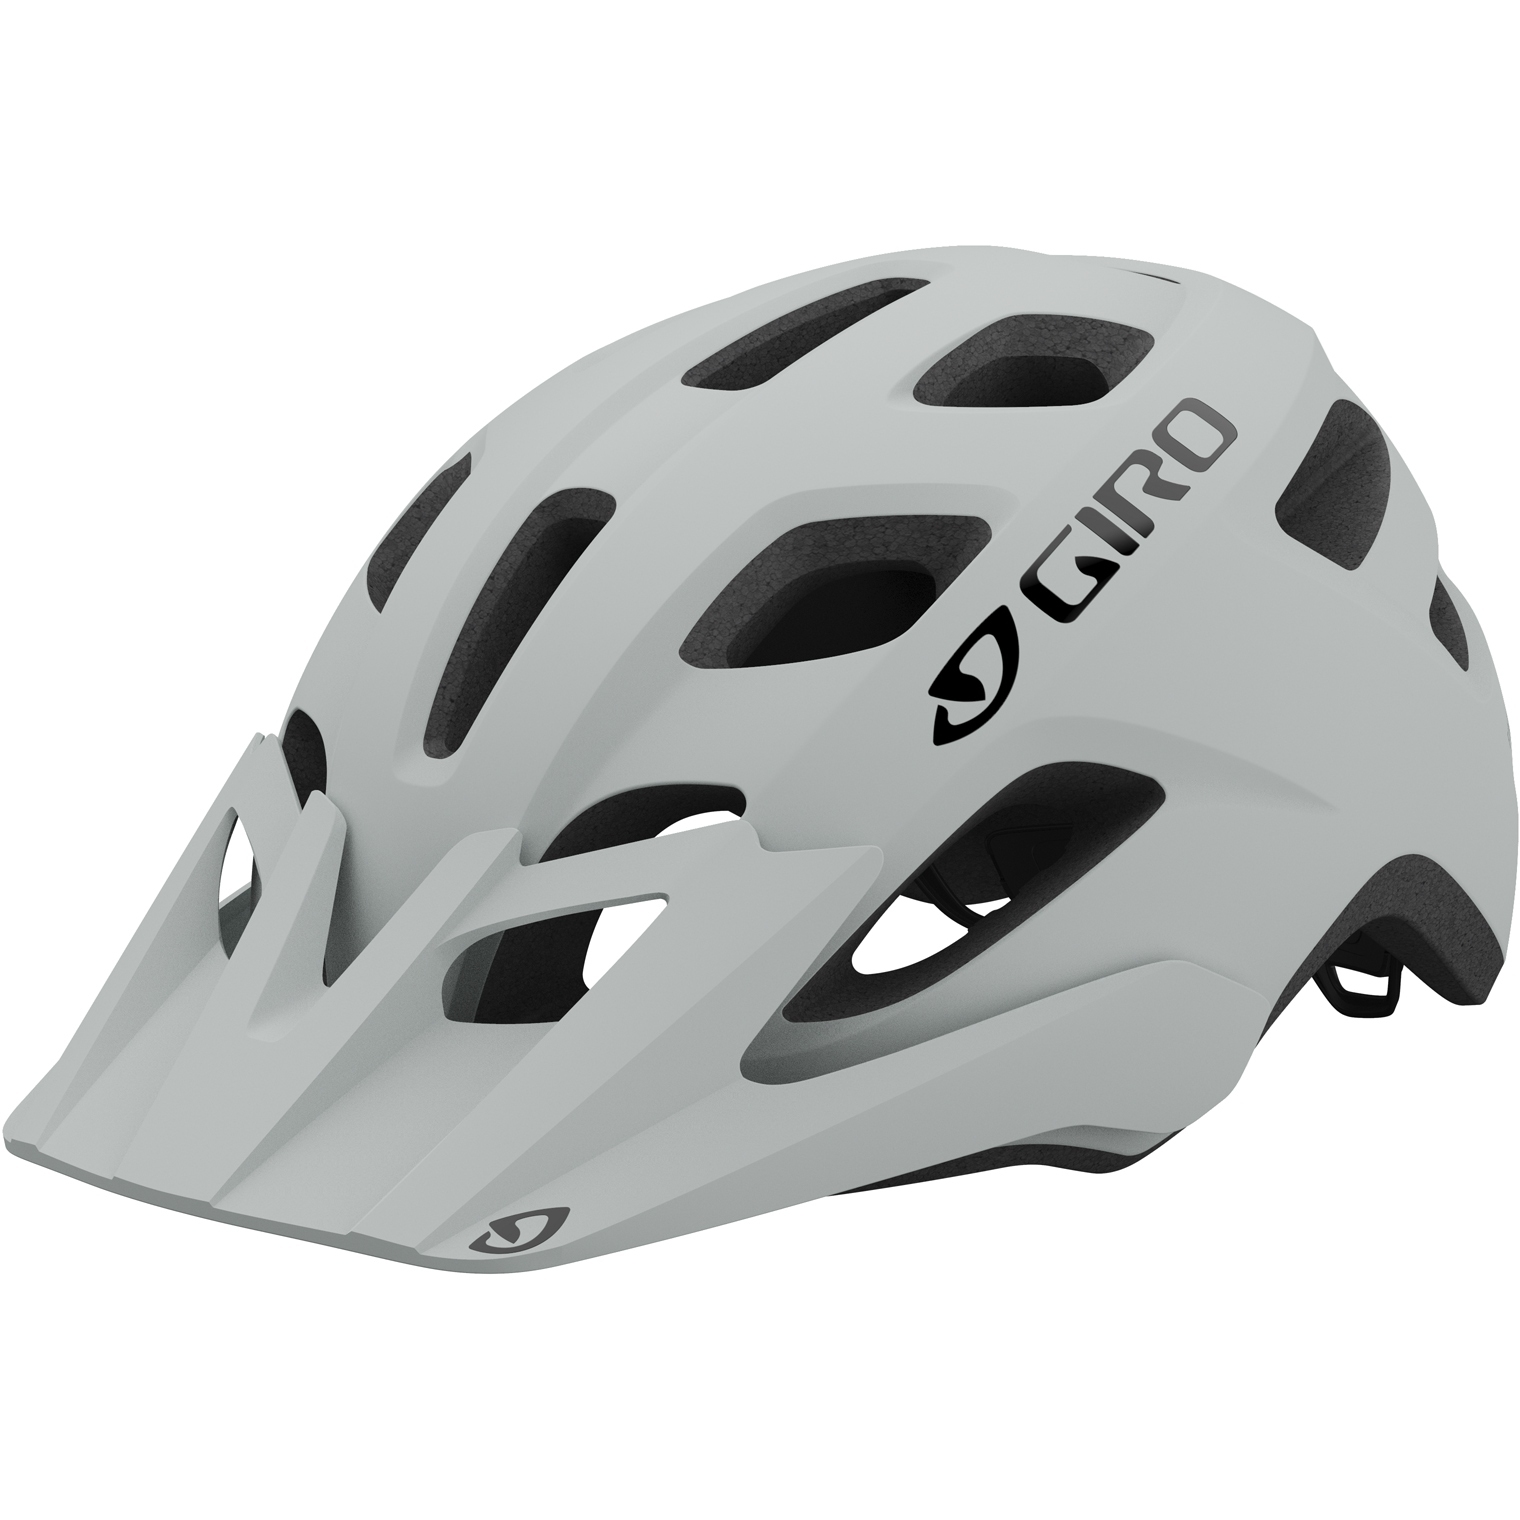 Produktbild von Giro Fixture Helm - matte grey